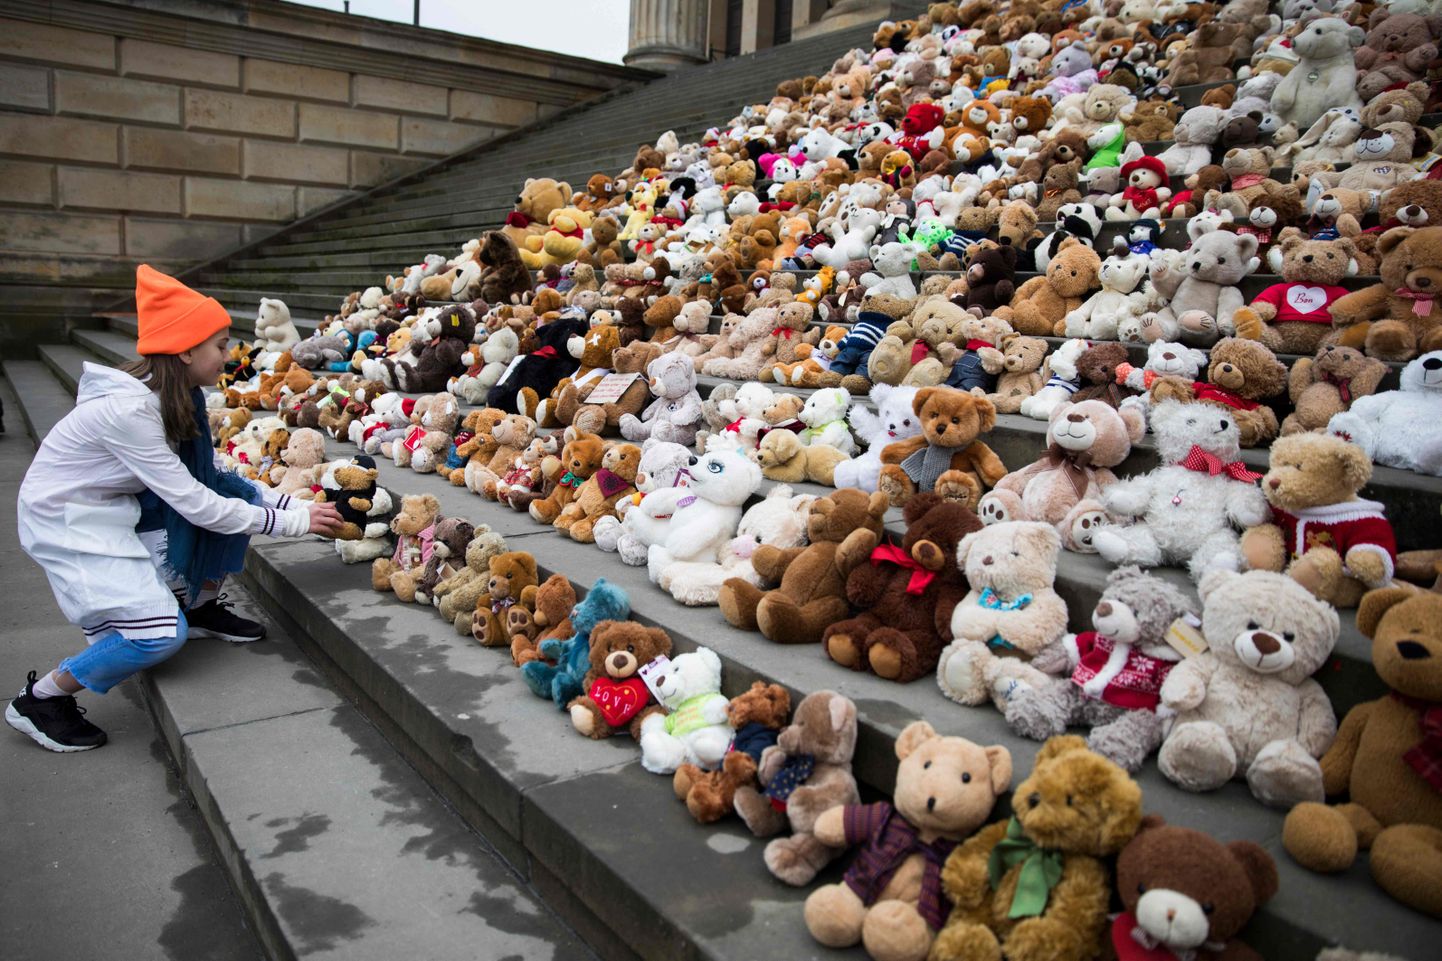 Berliini kontserdimaja trepile asetati täna 740 pehmet mänguasja, et tõmmata tähelepanu neile 740 000 Süüria lapsele, kes on kodusõja tõttu olnud sunnitud kodust põgenema. Süüria kodusõda algas täpselt seitse aastat tagasi, 15. märtsil 2011.